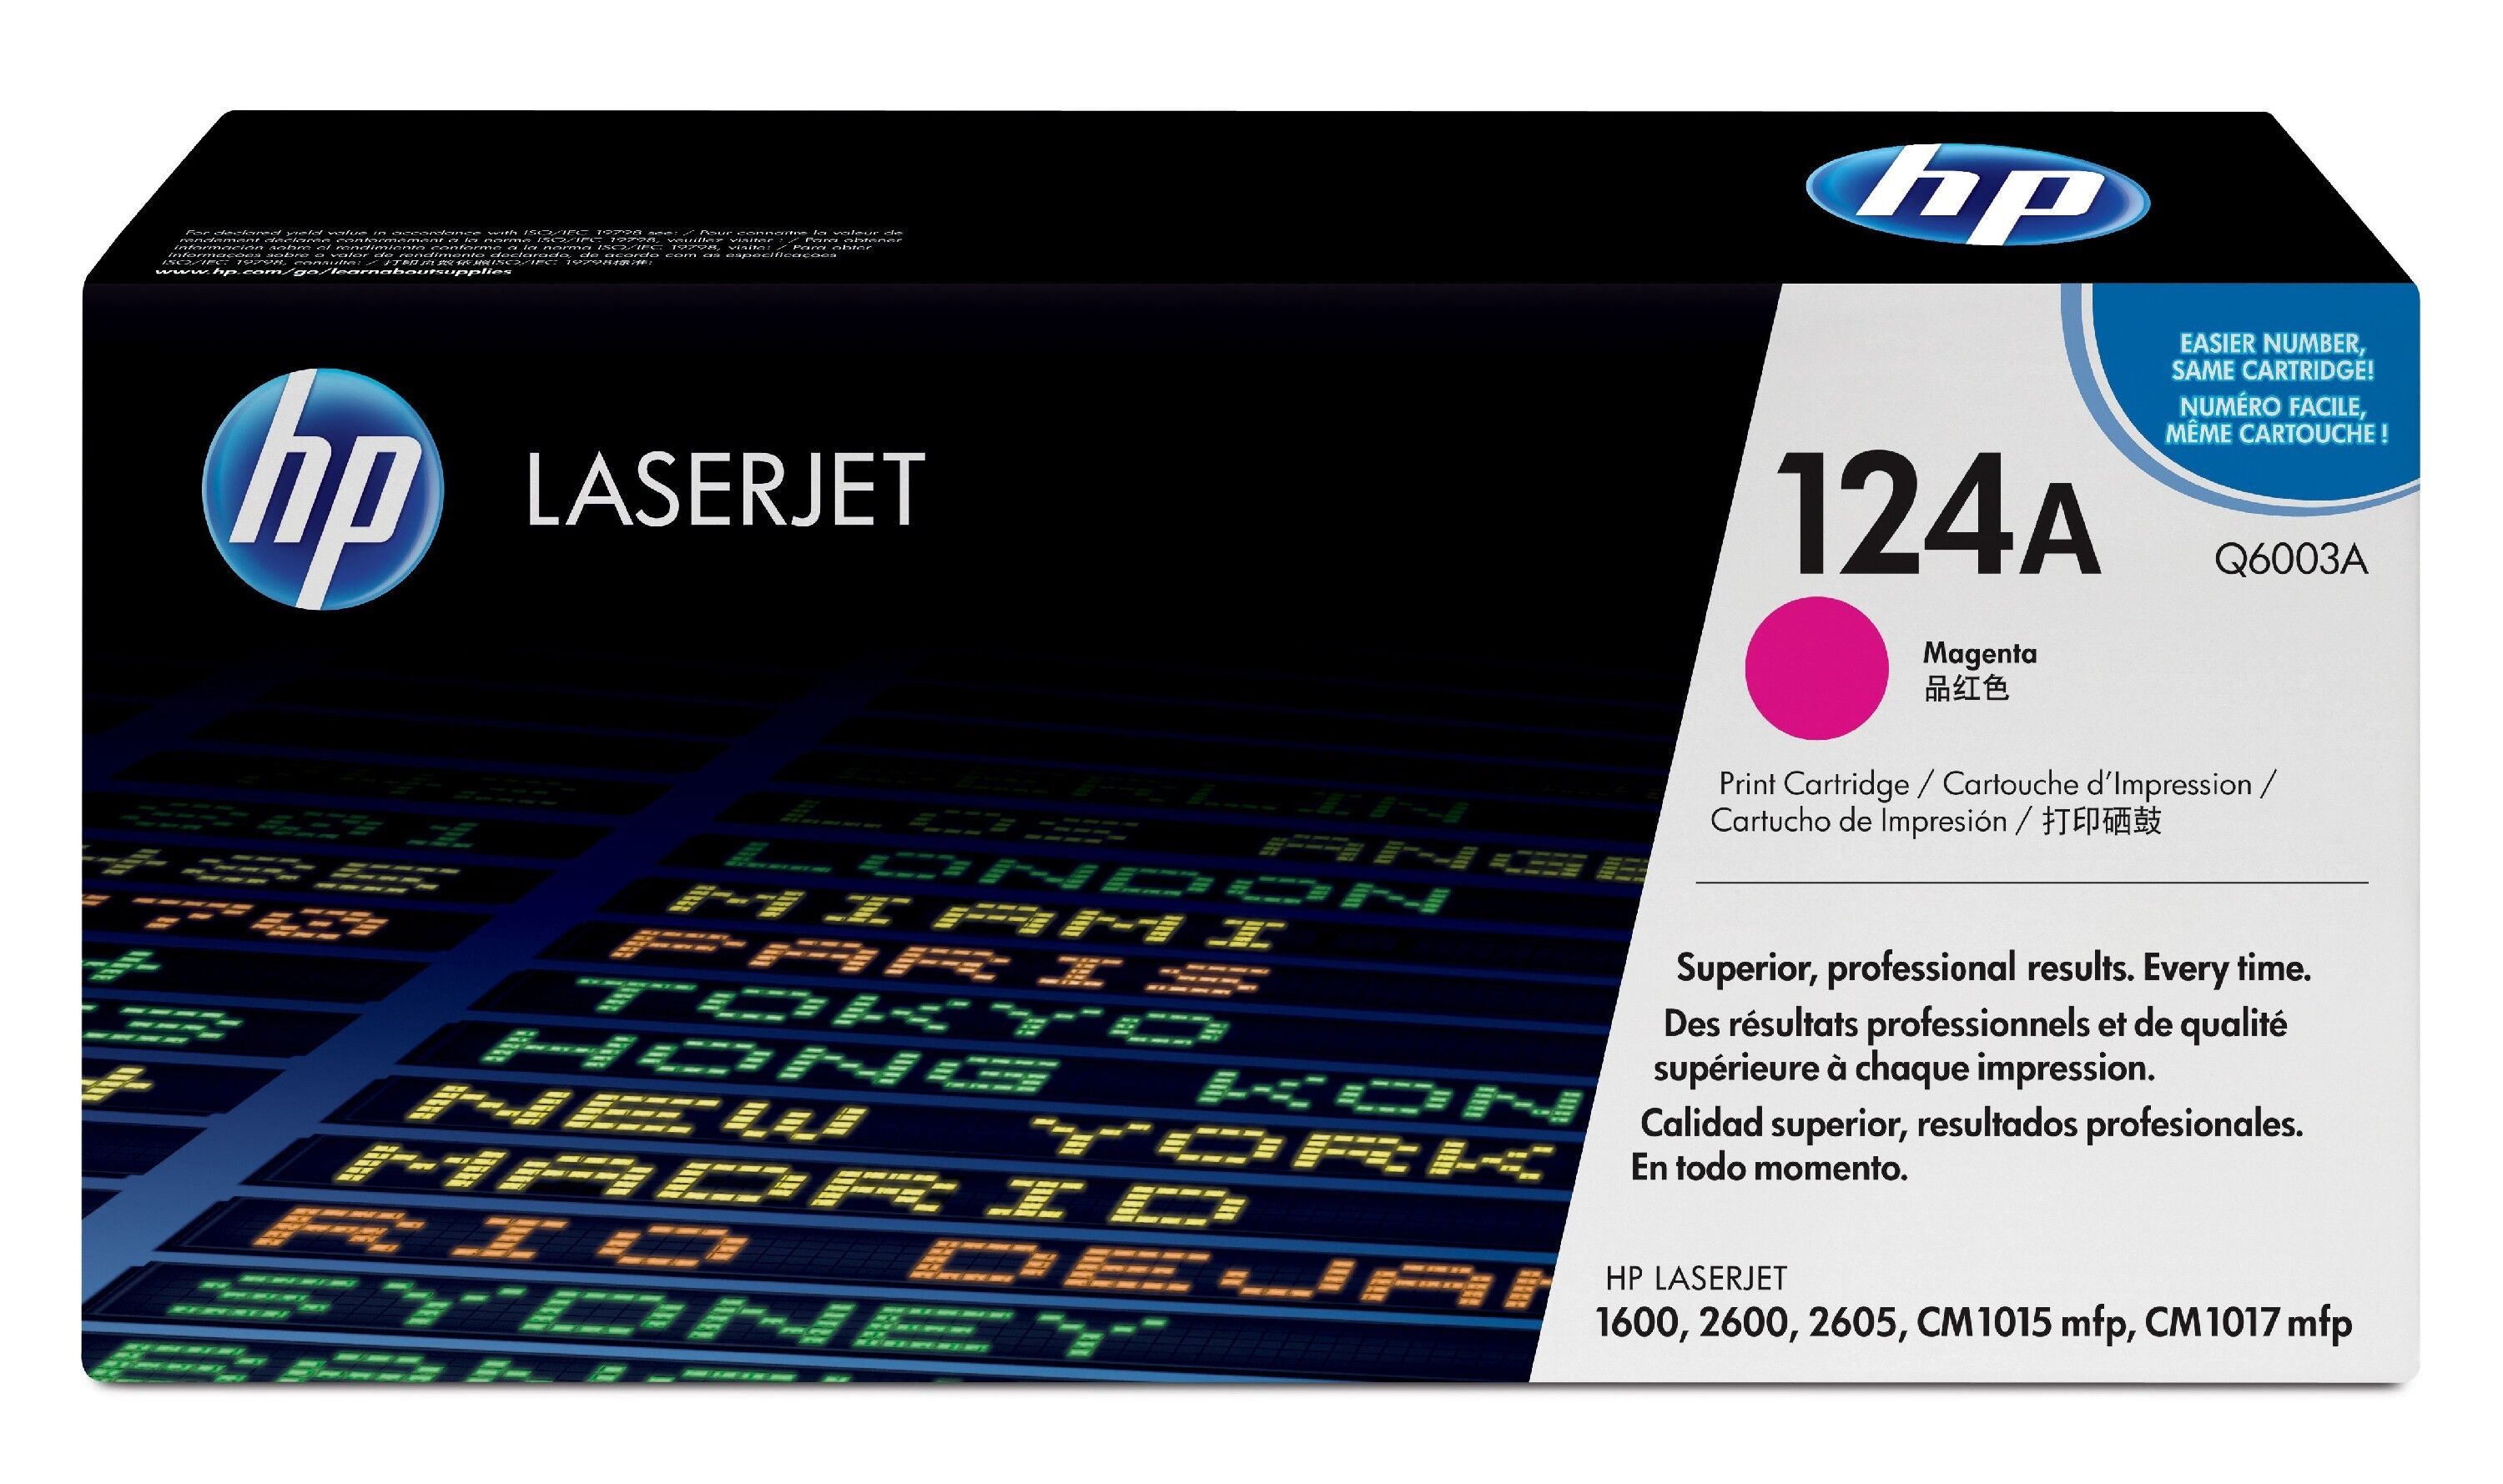 HP Original HP Color LaserJet CM 1015 (Q6003A / 124A) Toner Magenta